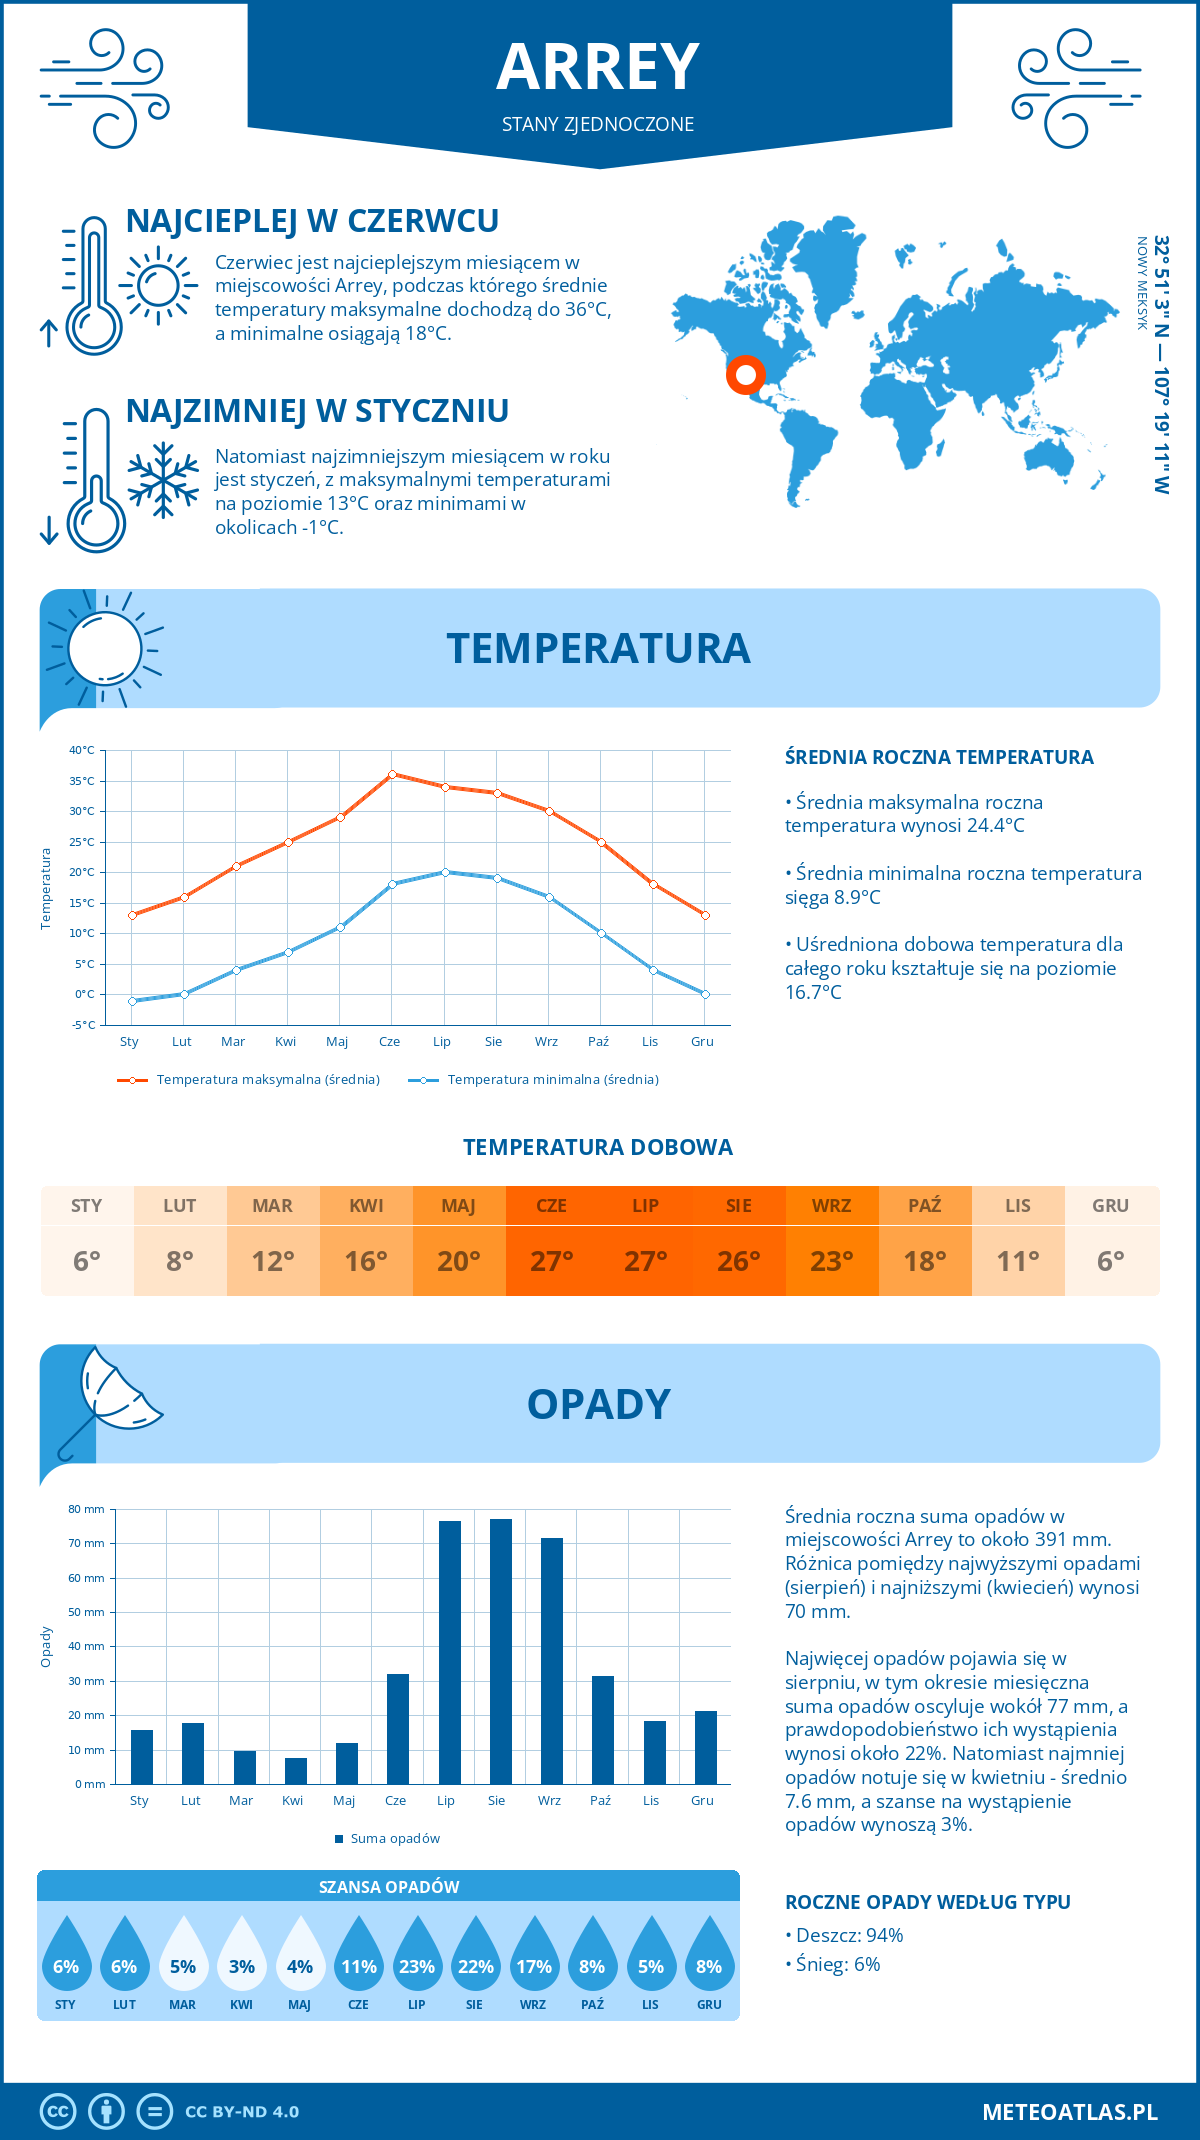 Pogoda Arrey (Stany Zjednoczone). Temperatura oraz opady.